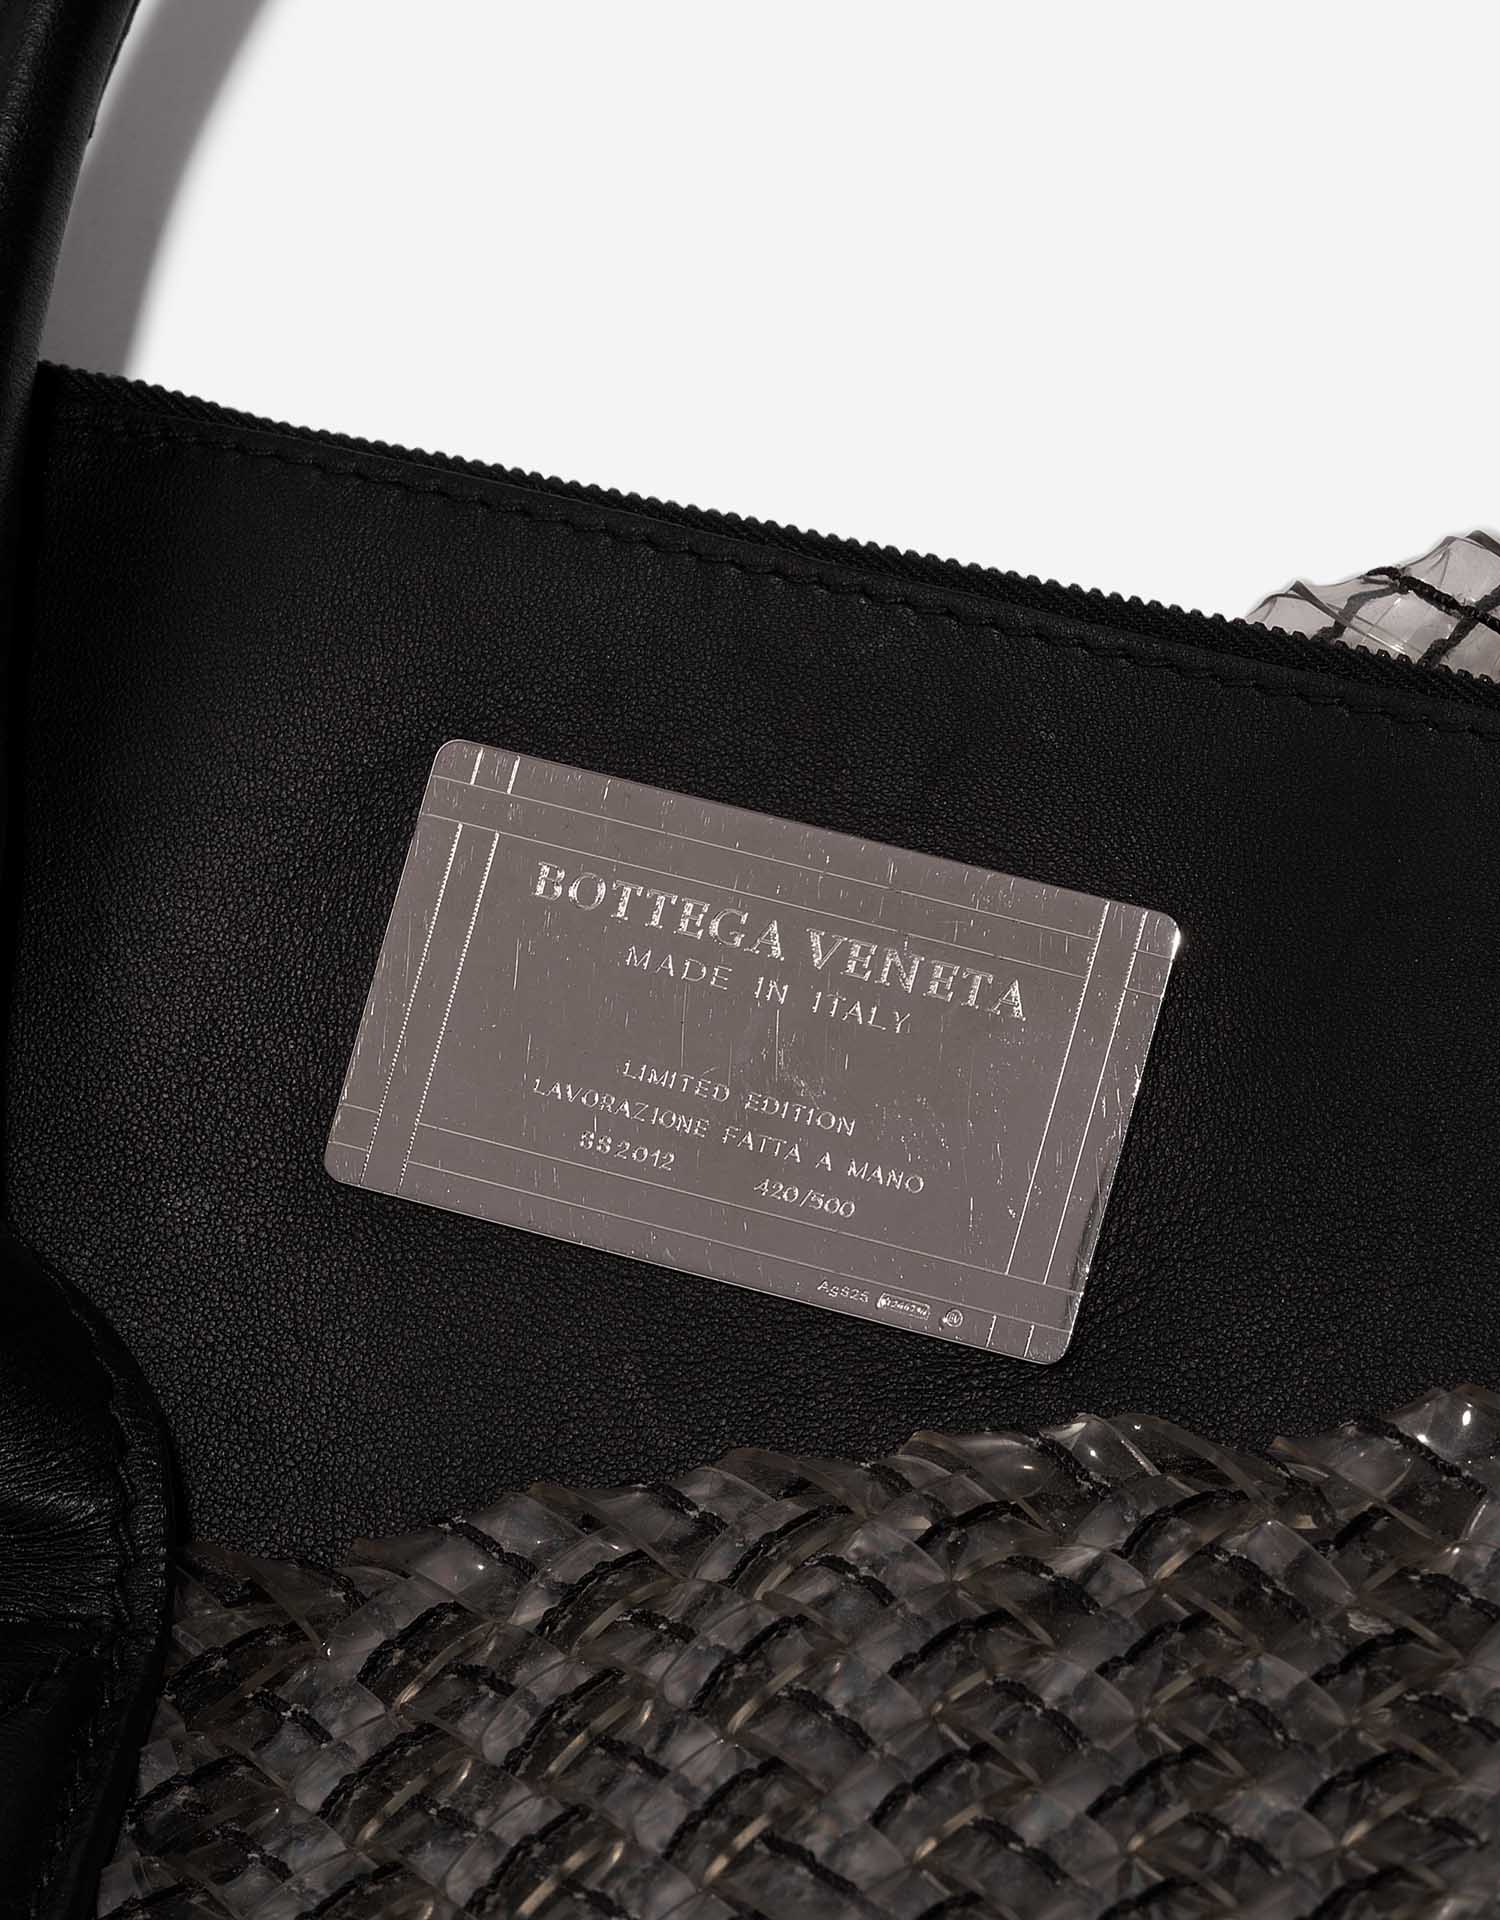 Sac Bottega Veneta d'occasion Cabat Grand PVC Transparent Transparent Logo | Vendez votre sac de créateur sur Saclab.com